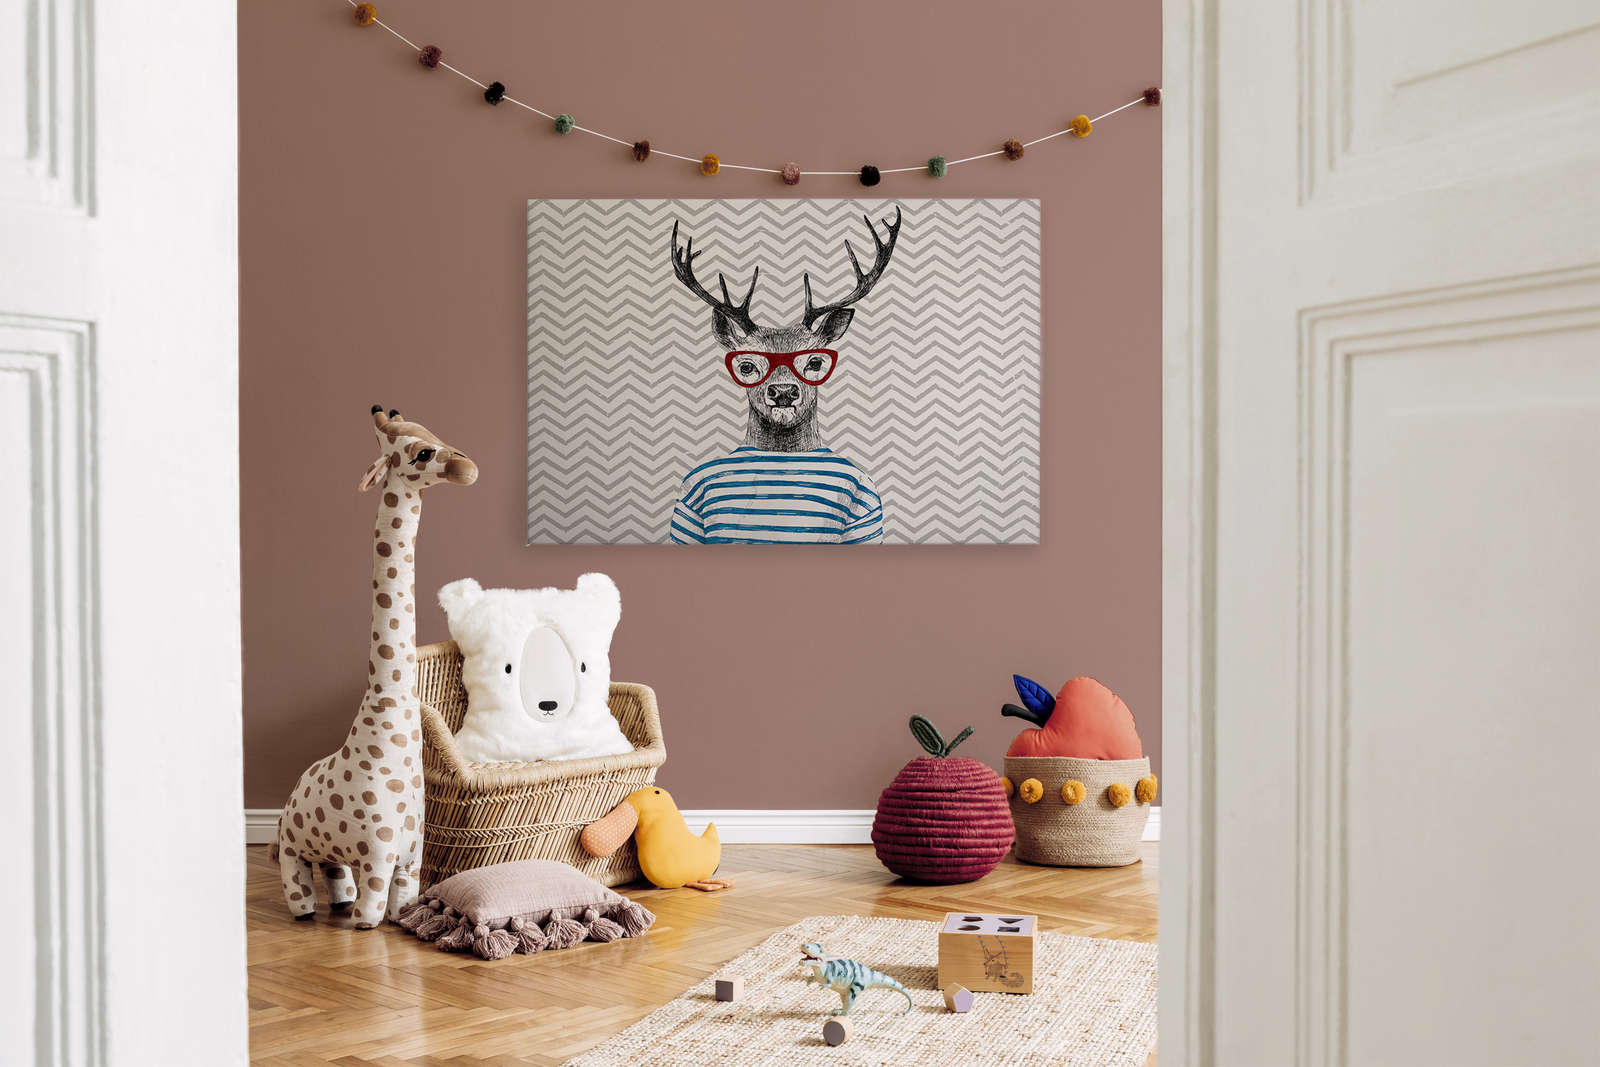             Tela da camera per bambini che dipinge un disegno comico, cervo con occhiali - 1,20 m x 0,80 m
        